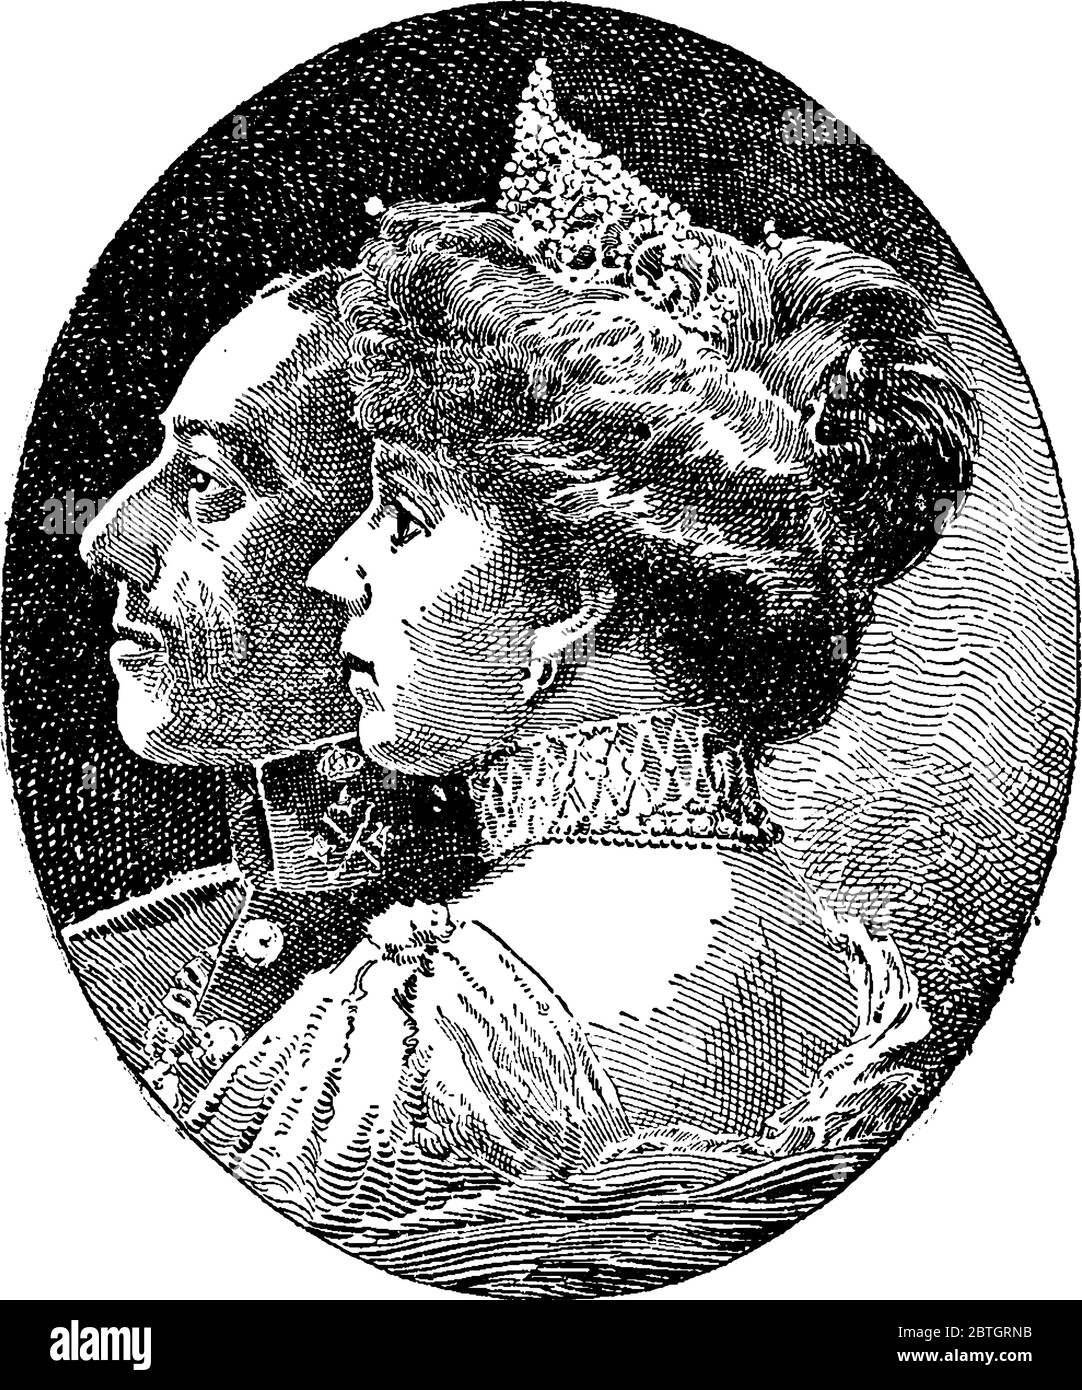 Porträt des Königs und der Königin von Spanien im 19. Jahrhundert, Vintage-Strichzeichnung oder Gravur Illustration. Stock Vektor